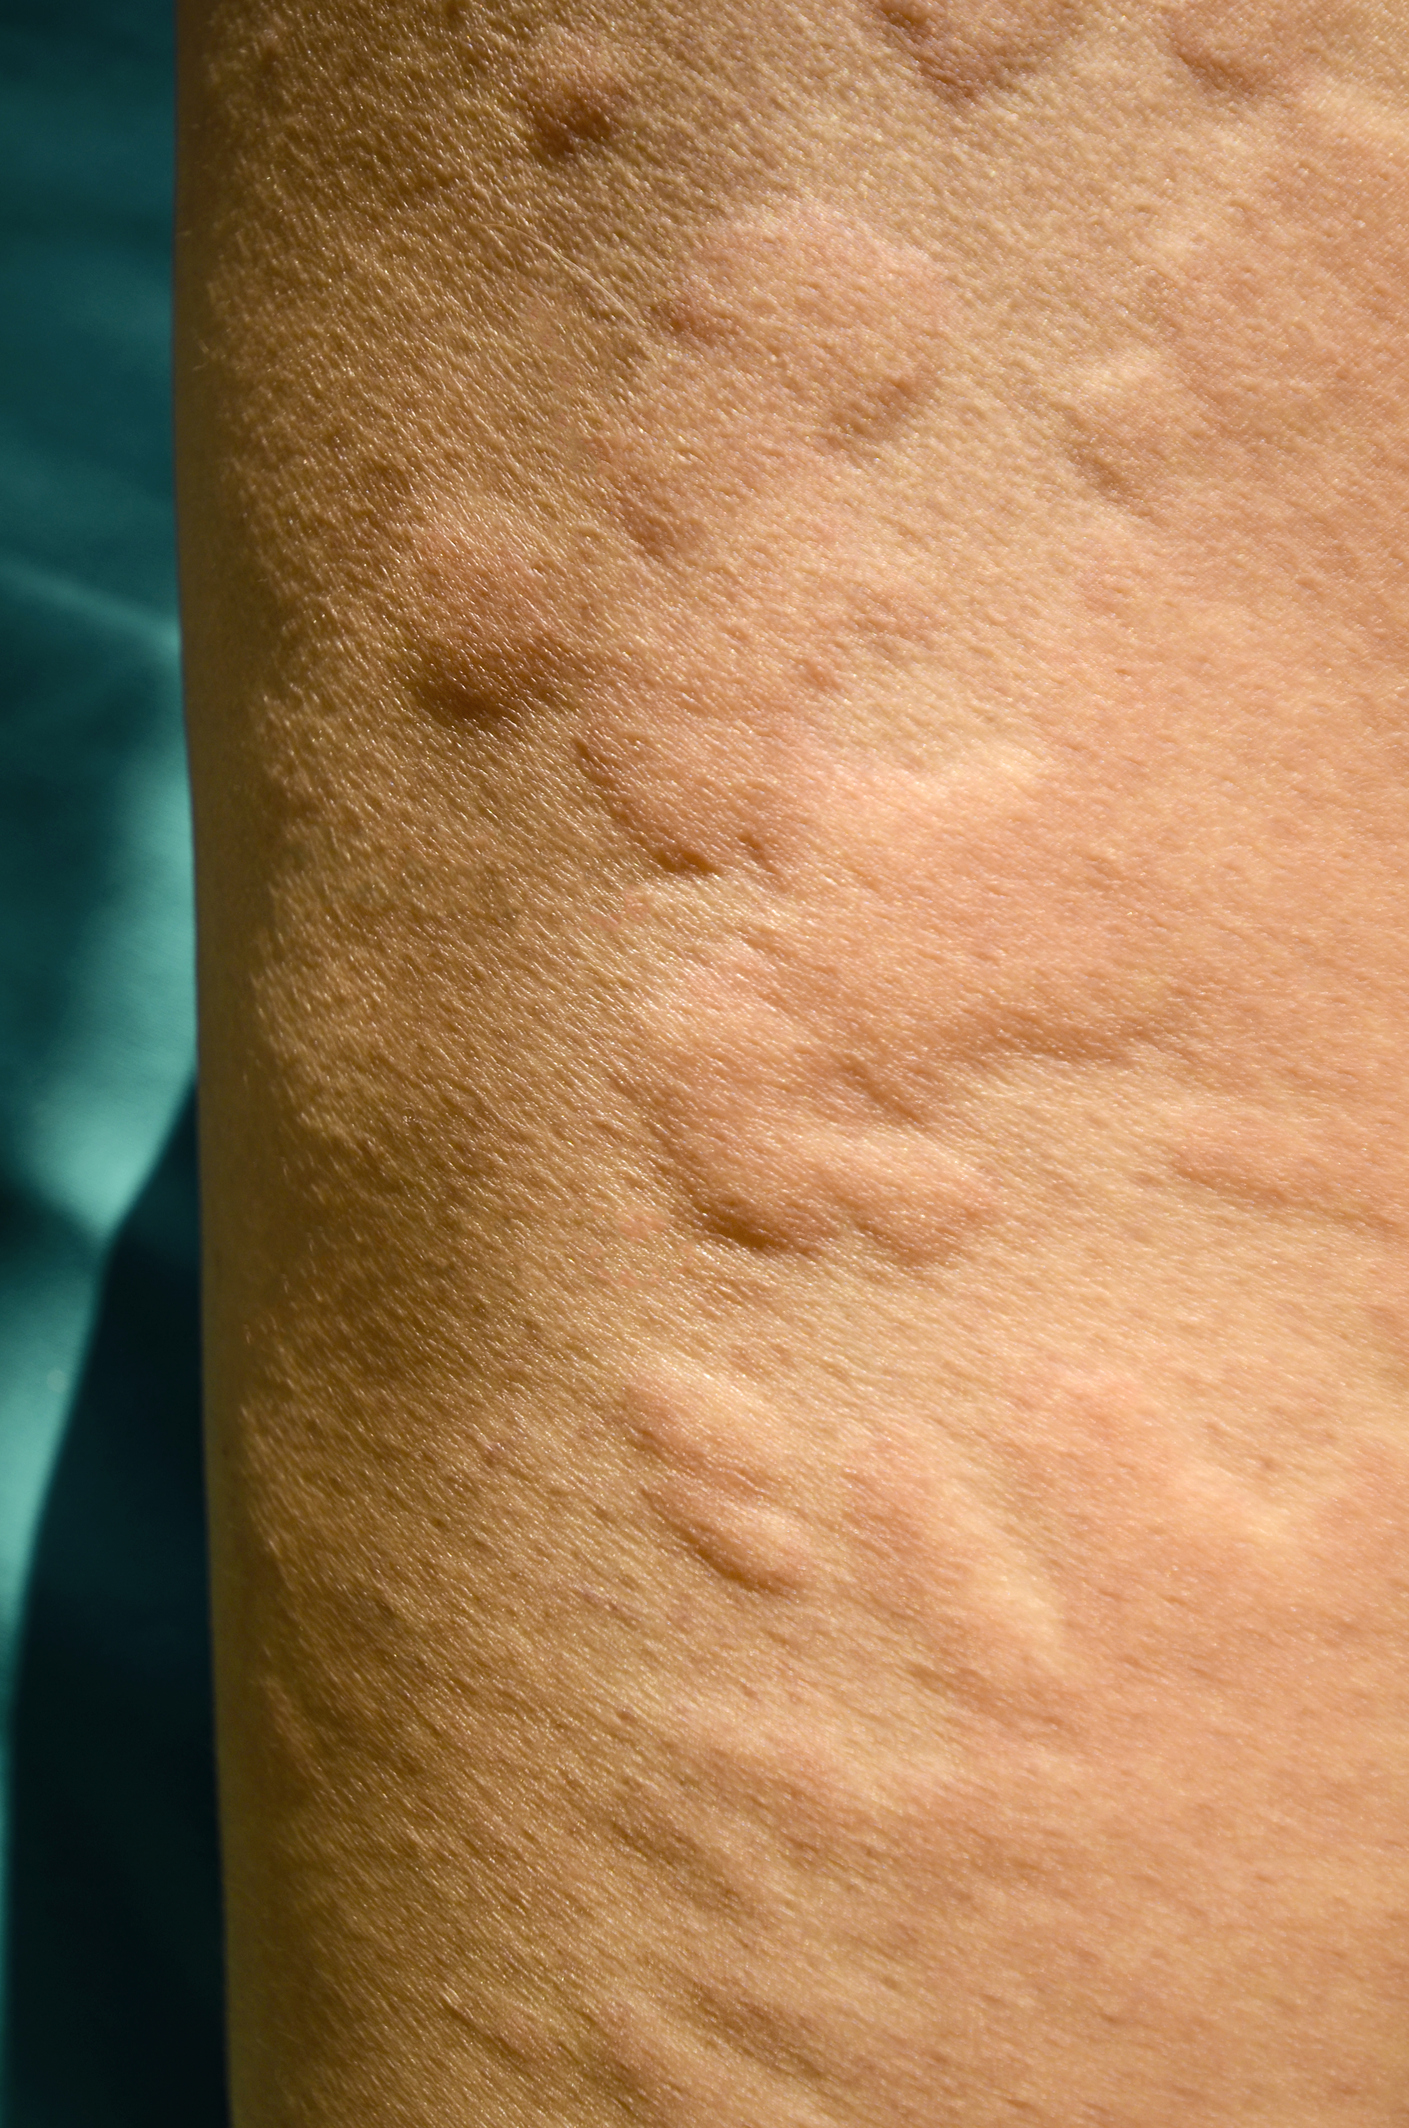 kopřivka alergický ekzém - malé pupeny vystupují nad úroveň pokožky